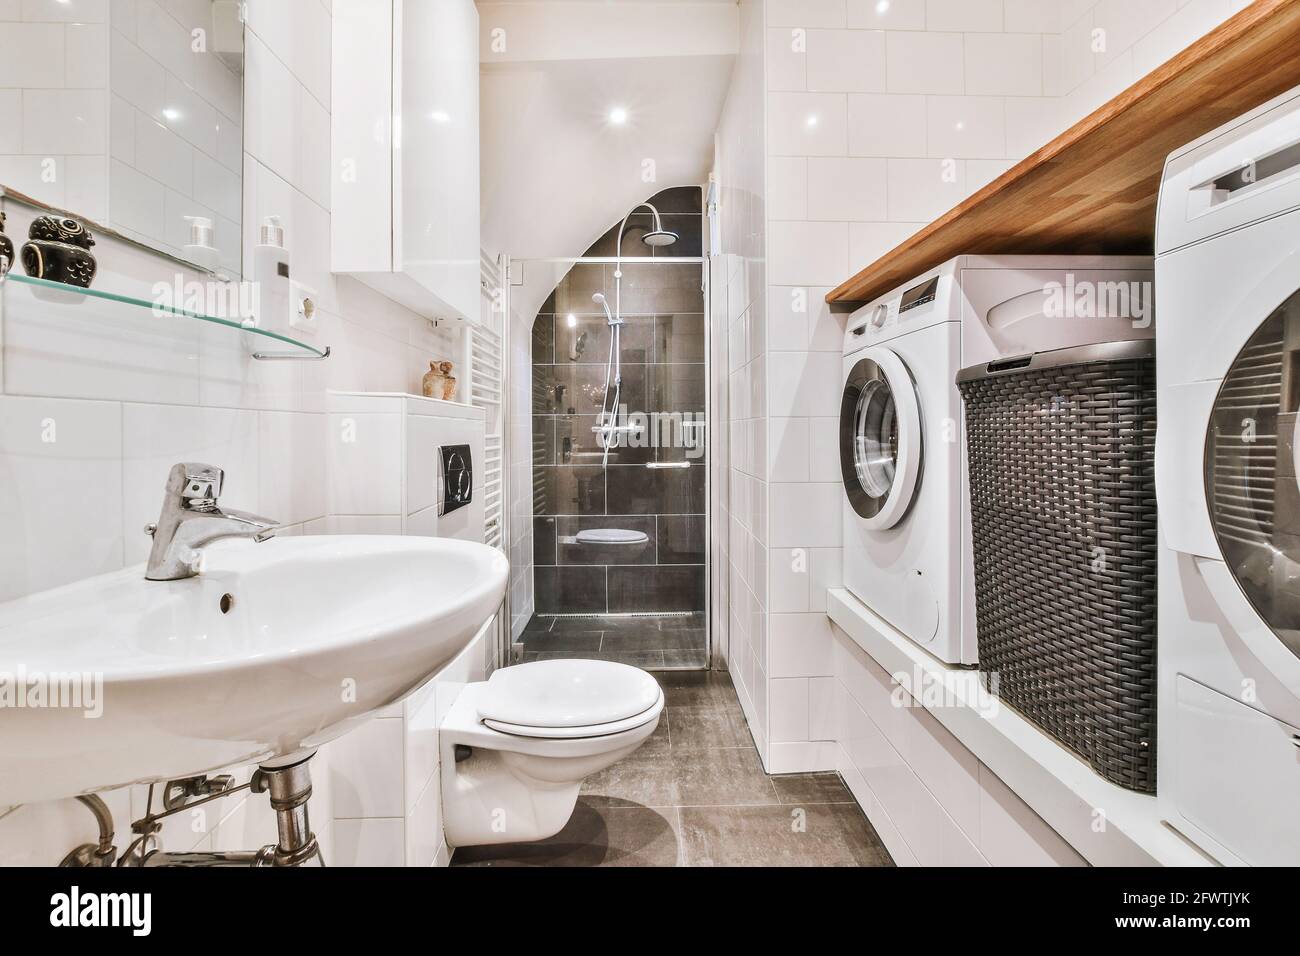 Un cuarto de lavado con azulejos blancos en las paredes y estantes de  madera frente a la lavadora secadora y secadora.